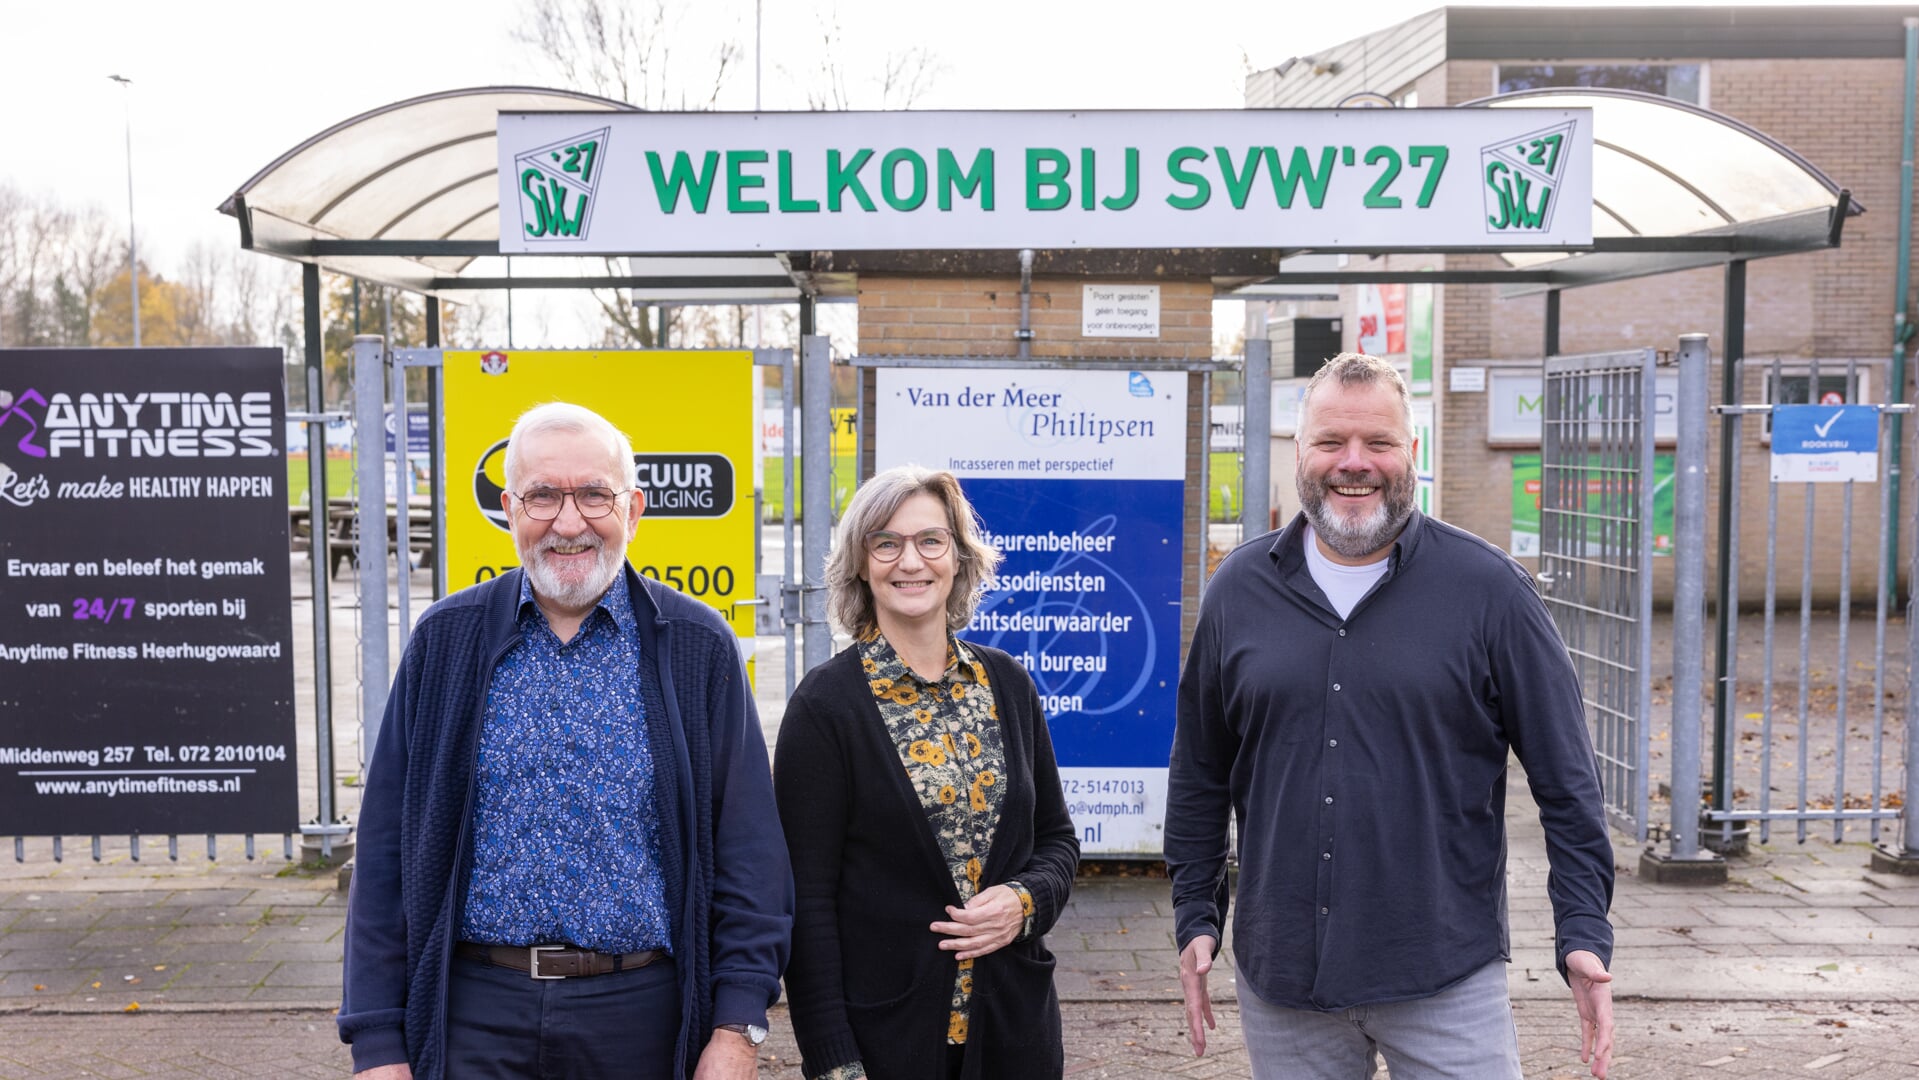 Hans Kuipers (l), Martine Raams en Jeroen Appelman voor de ingang van het terrein van SVW '27. De tekst boven de toegangspoort spreekt boekdelen.